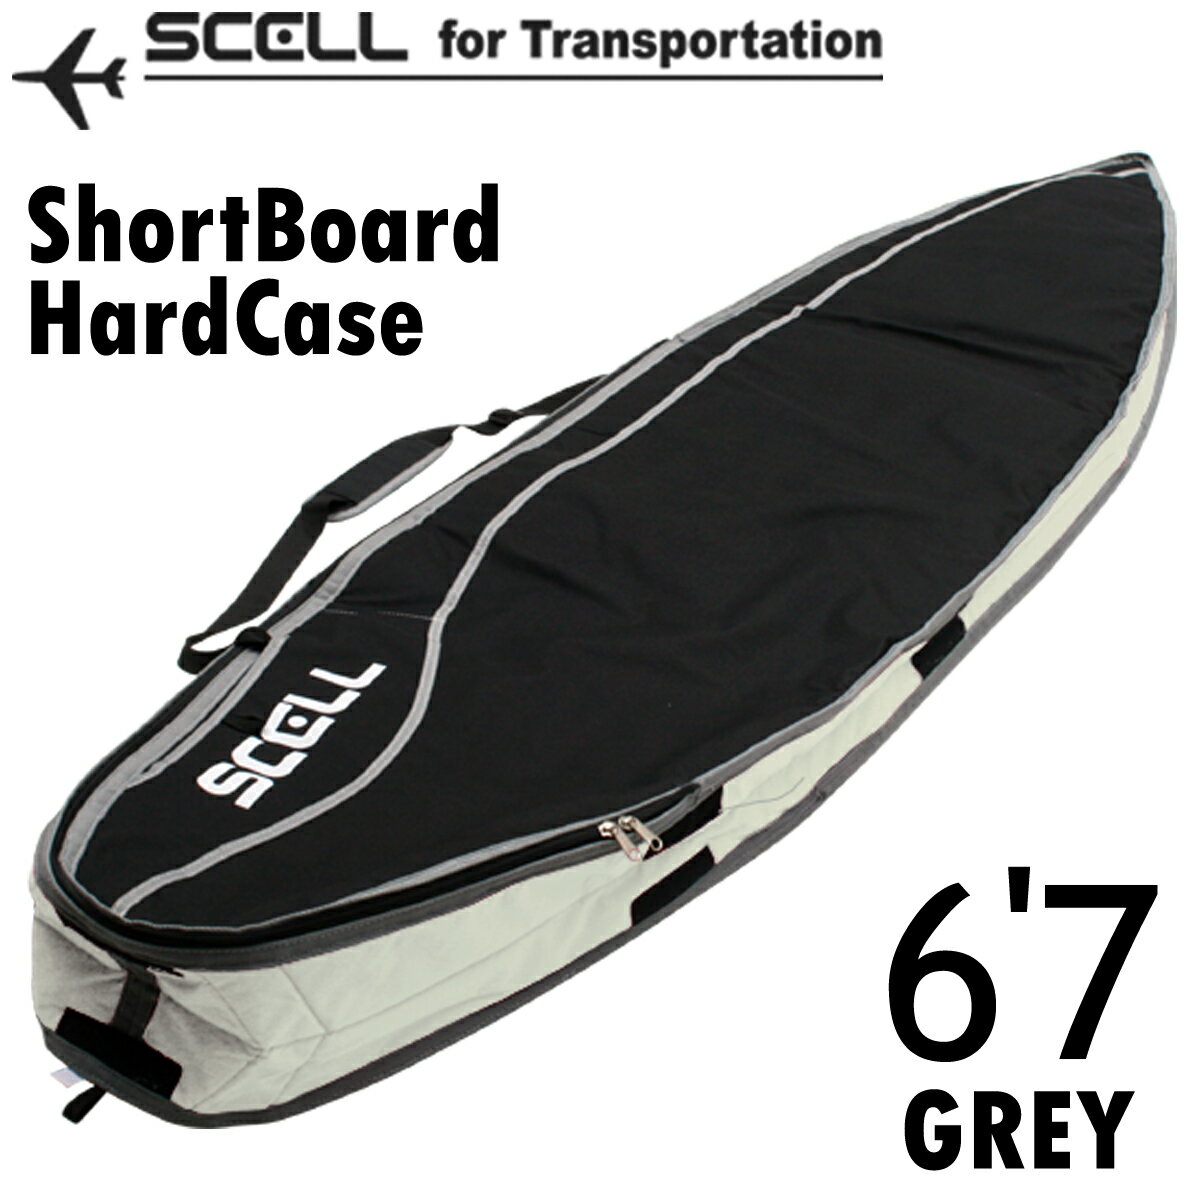 SCELL セル ハードケース 6'7 グレー GREY ショートボード SHORT ボードケース ポケット付 フィン付けたまま収納可能 取り外し可能なシ..